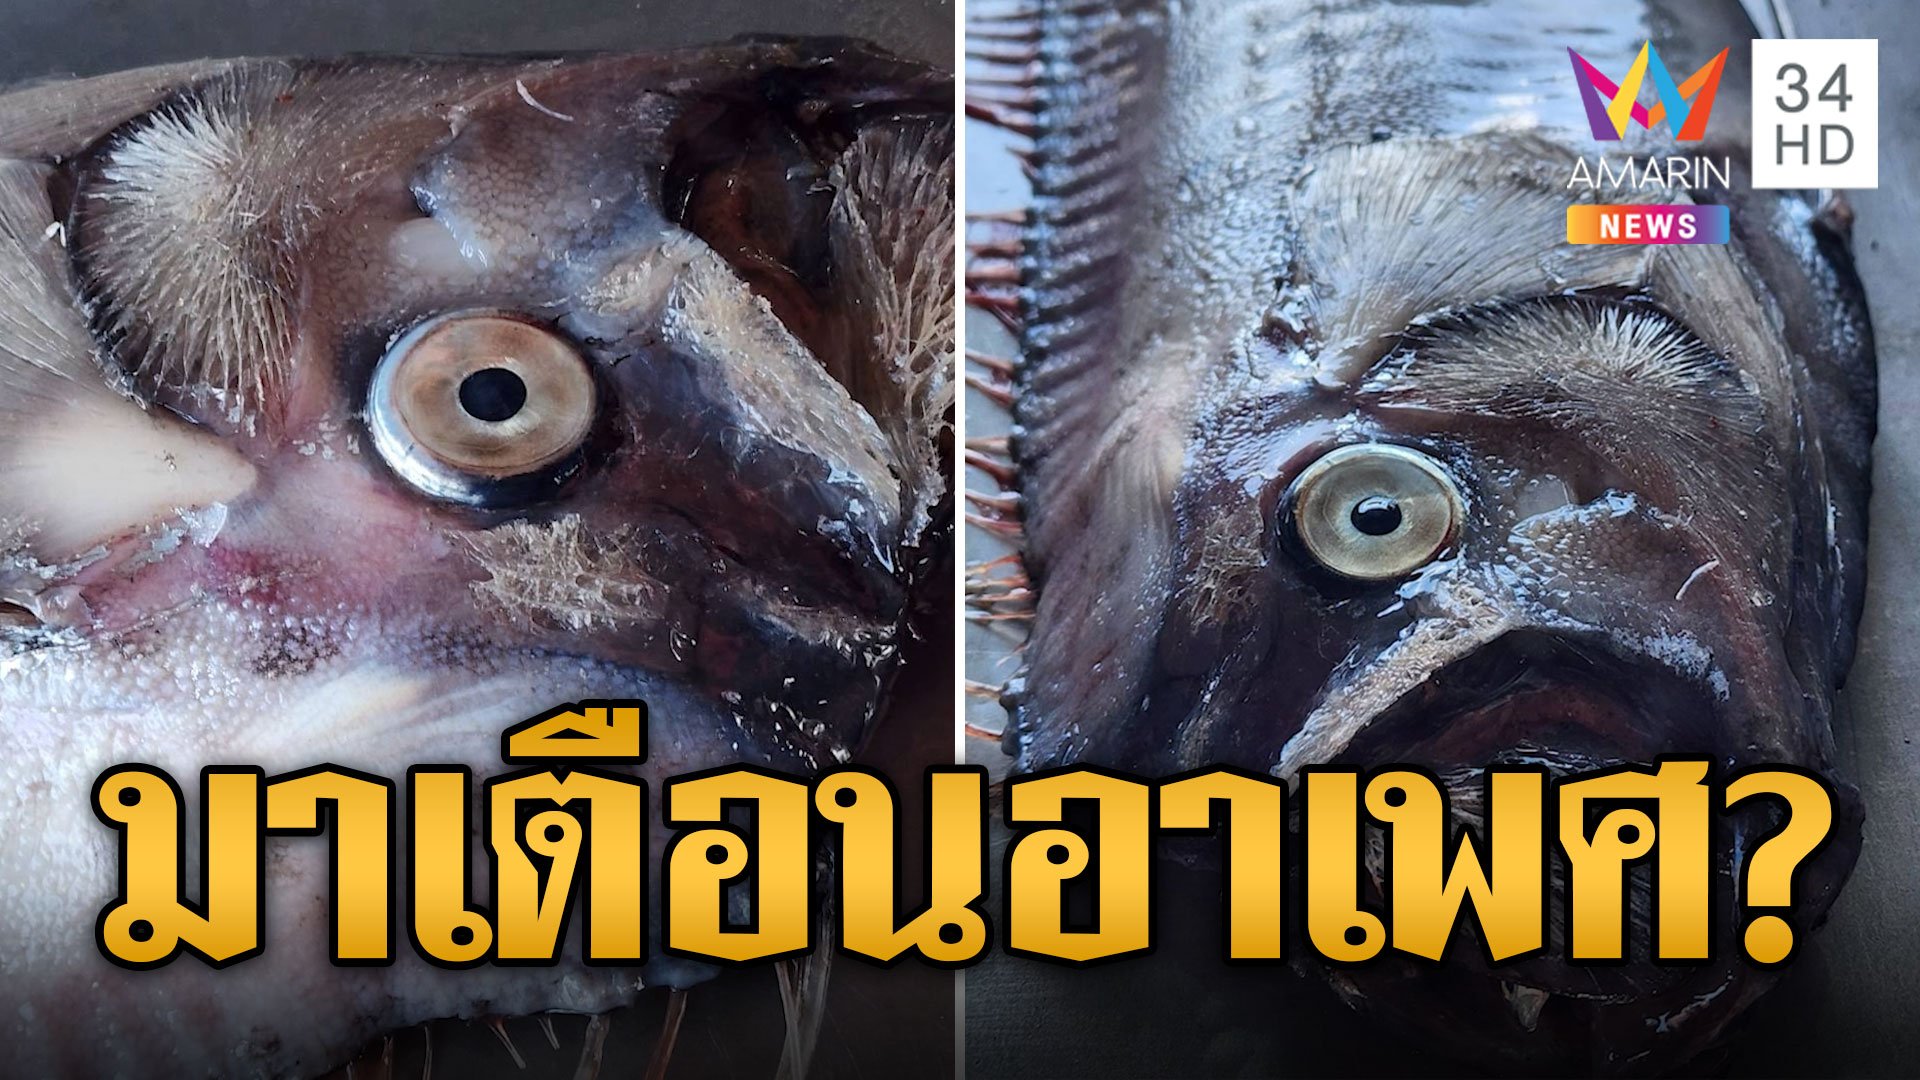 สัญญาณเตือน? ปลาพญานาคโผล่ทะเลไทย เชื่อจะเกิดอาเพศ | ข่าวอรุณอมรินทร์ | 5 ม.ค. 67 | AMARIN TVHD34